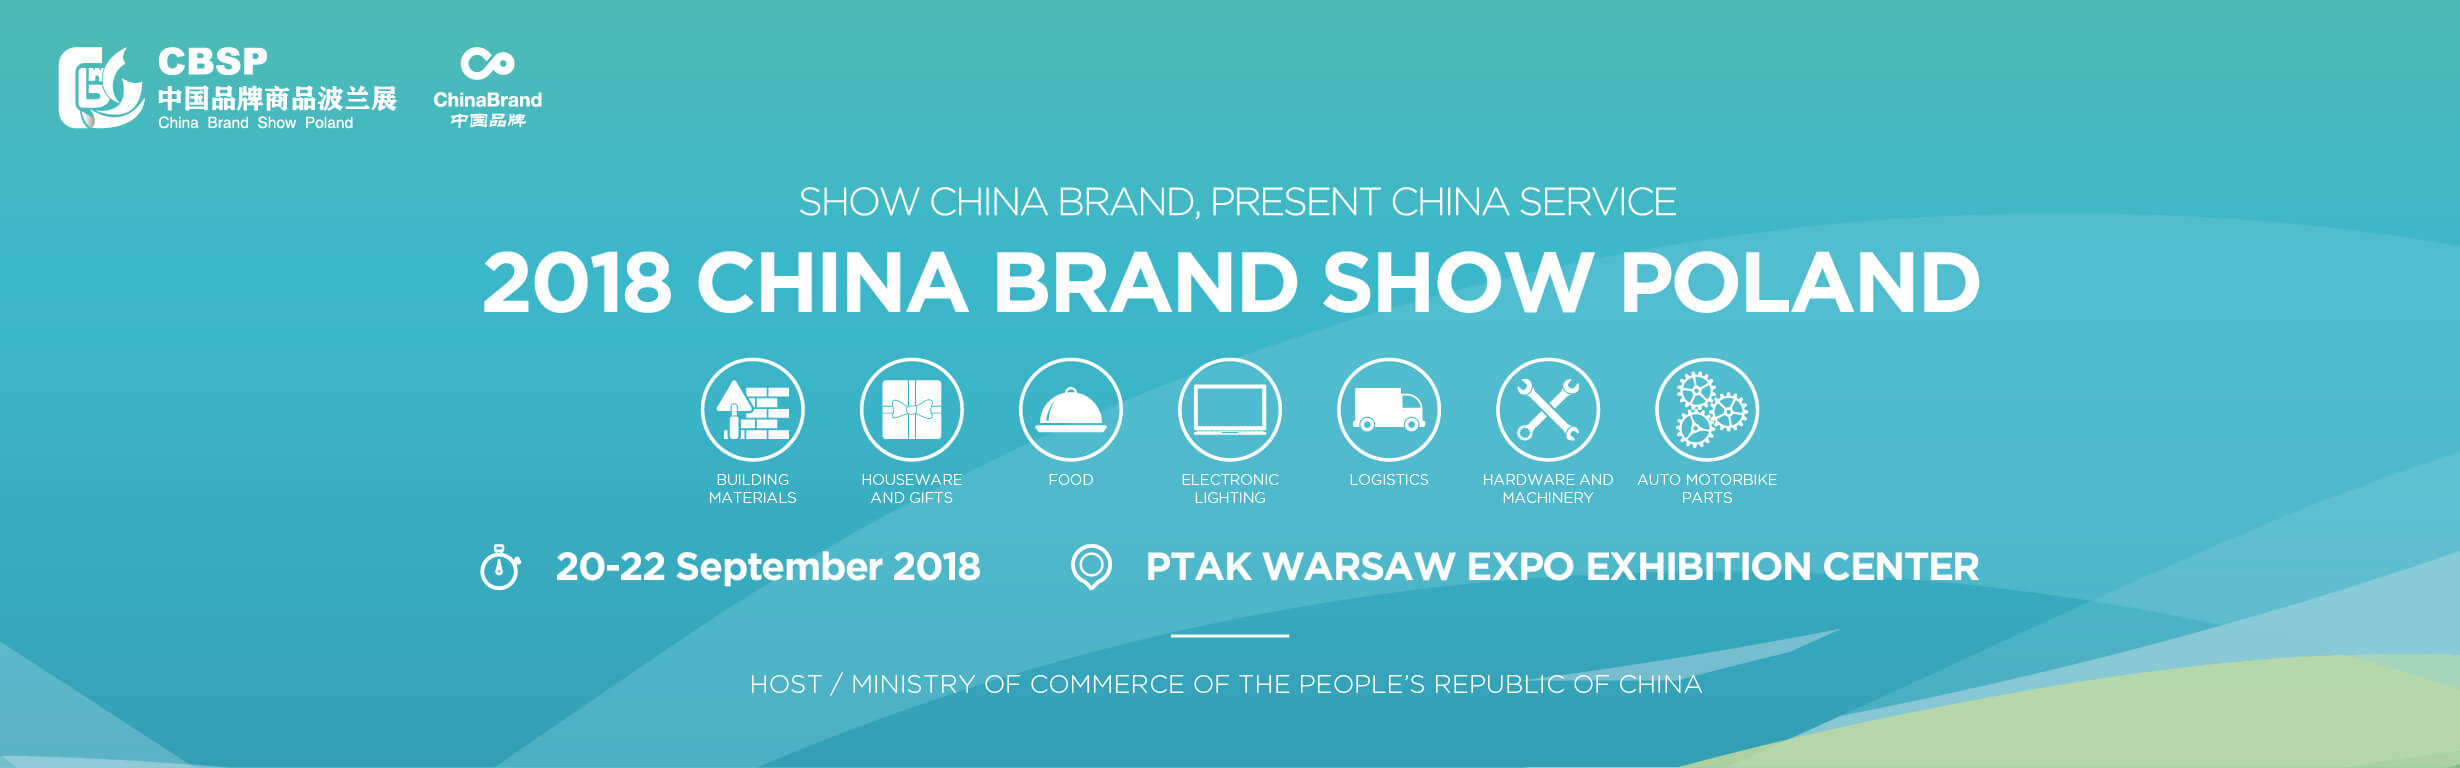 Przedsiębiorcy Koszalin - wspólny wyjazd na China Brand Show Poland 2018 